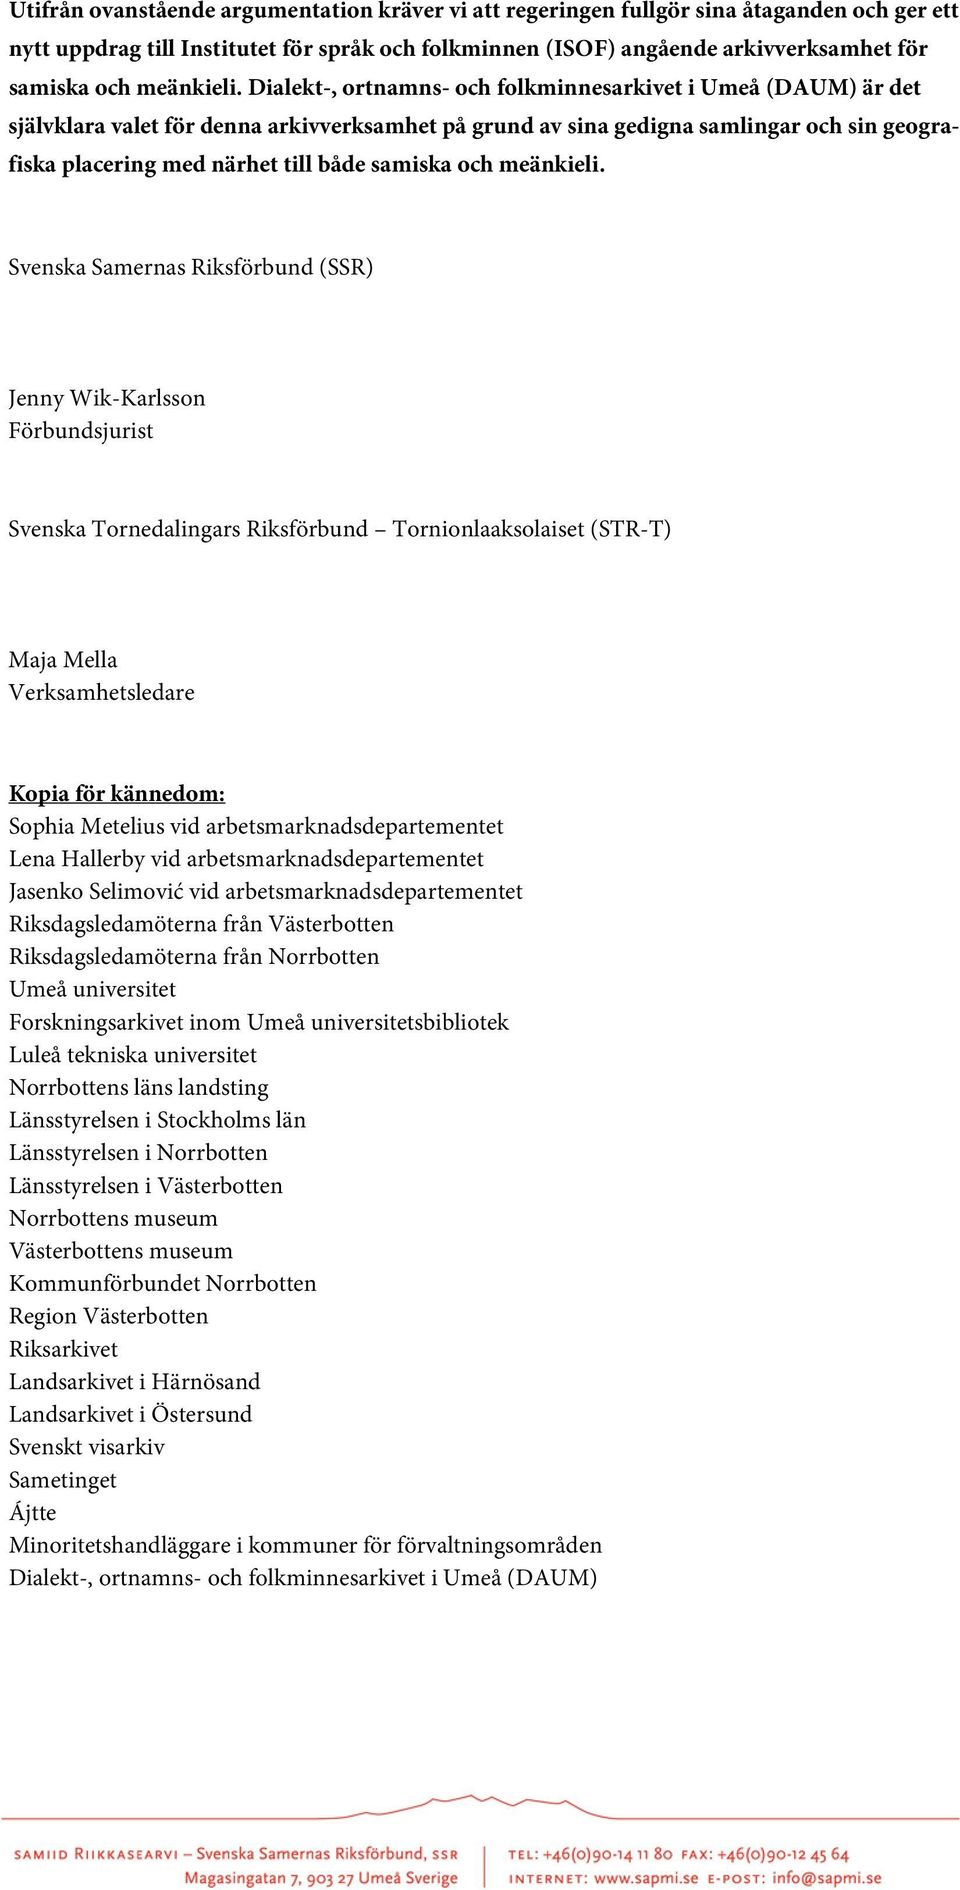 Dialekt-, ortnamns- och folkminnesarkivet i Umeå (DAUM) är det självklara valet för denna arkivverksamhet på grund av sina gedigna samlingar och sin geografiska placering med närhet till både samiska